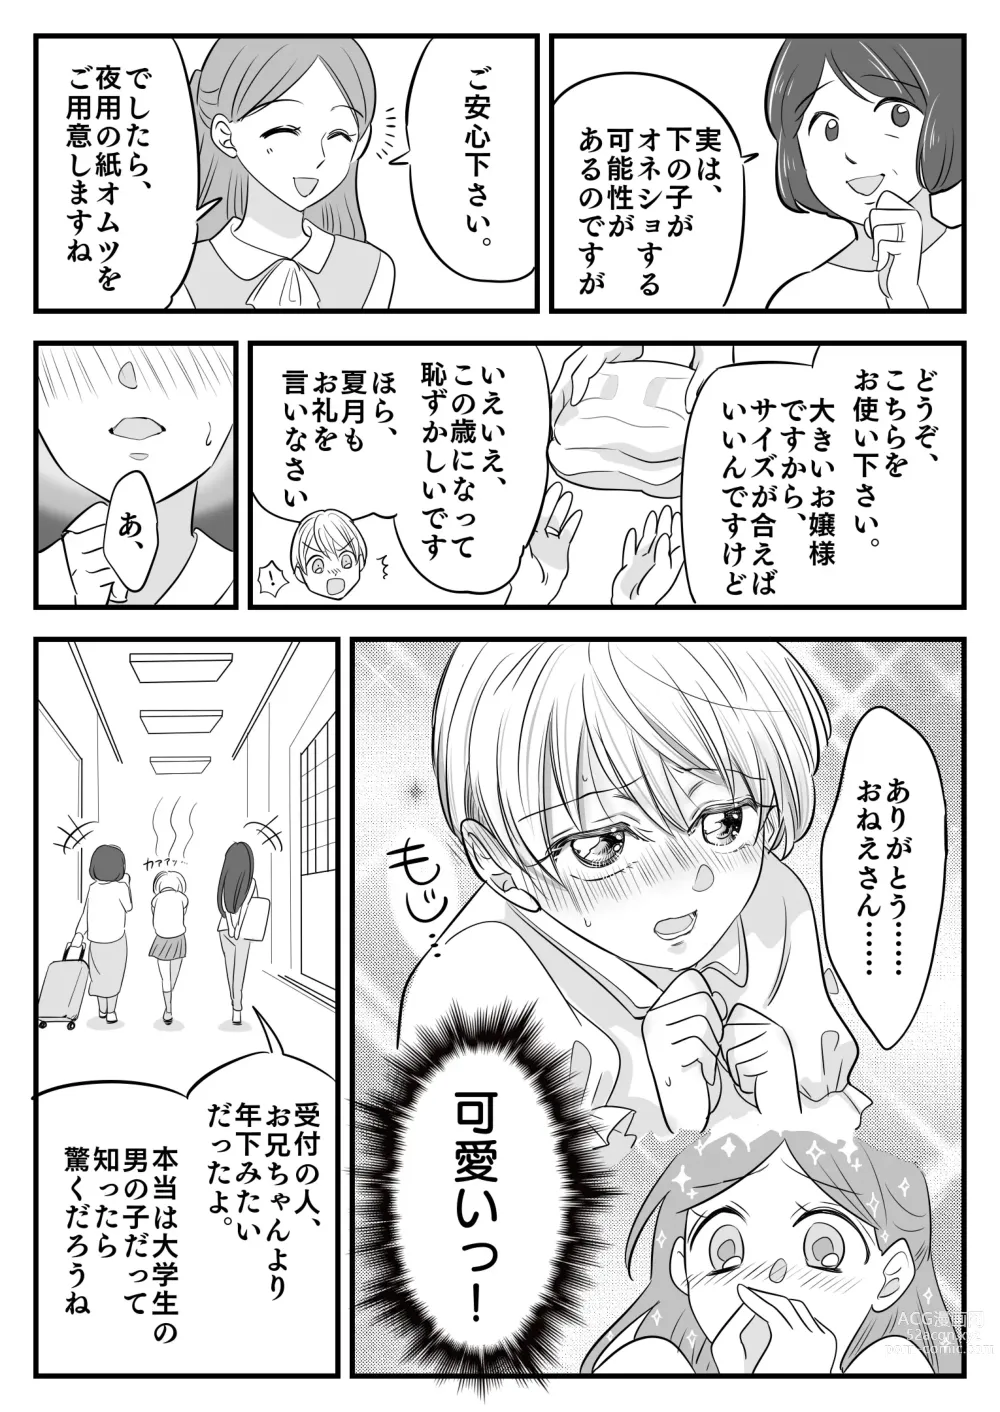 Page 8 of doujinshi Boku no Omutsu Kazoku Ryokou